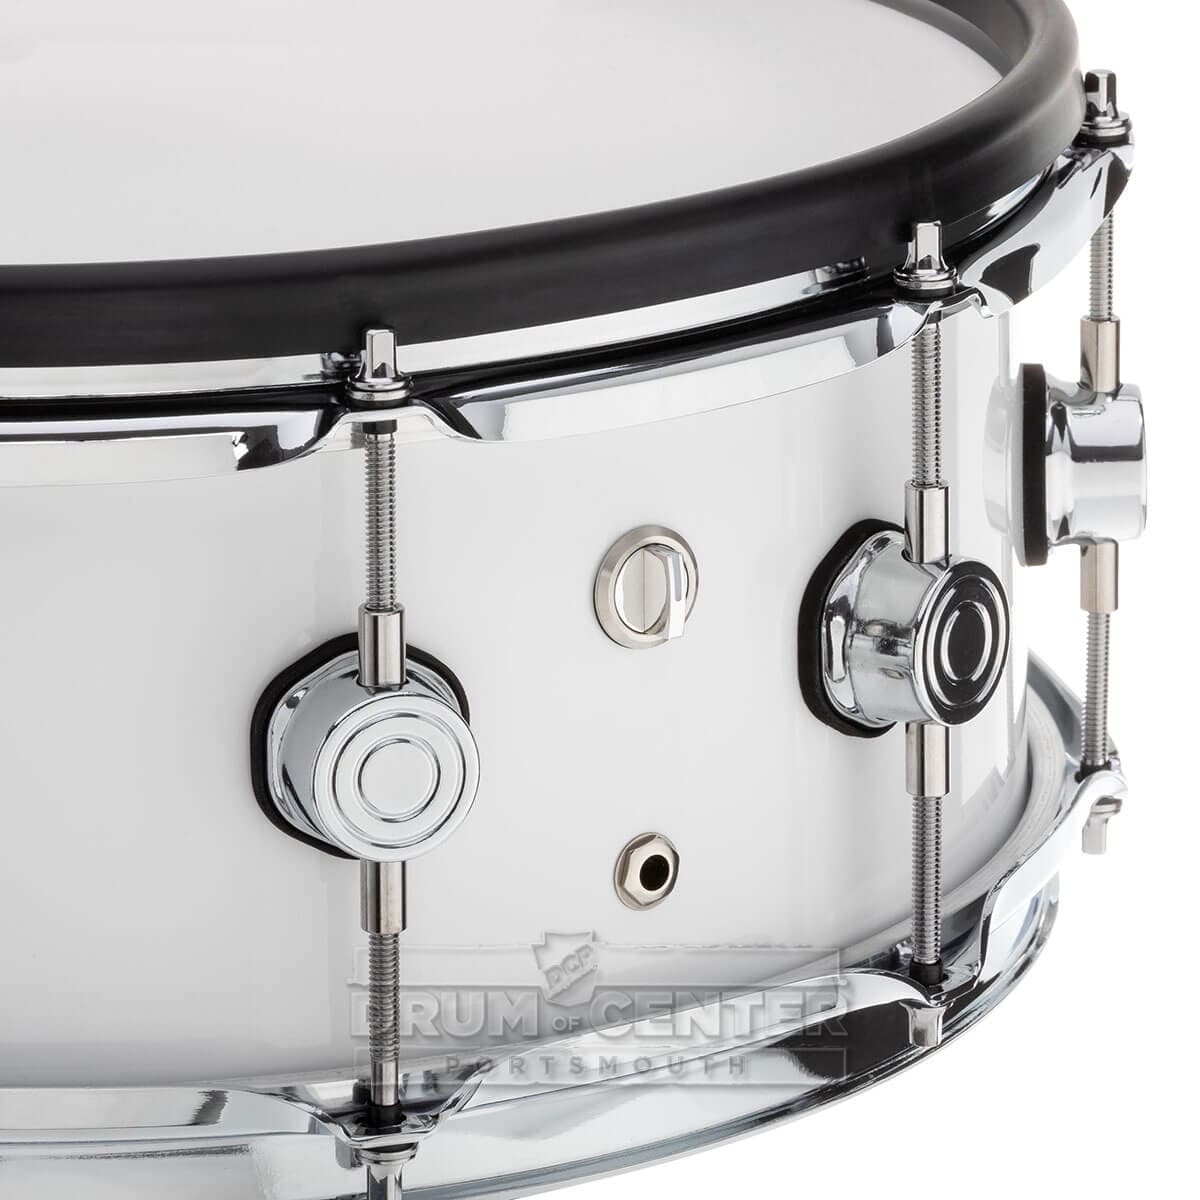 Drum-Tec Pro 3 Series E-Snare Drum 14x5.5 Piano White